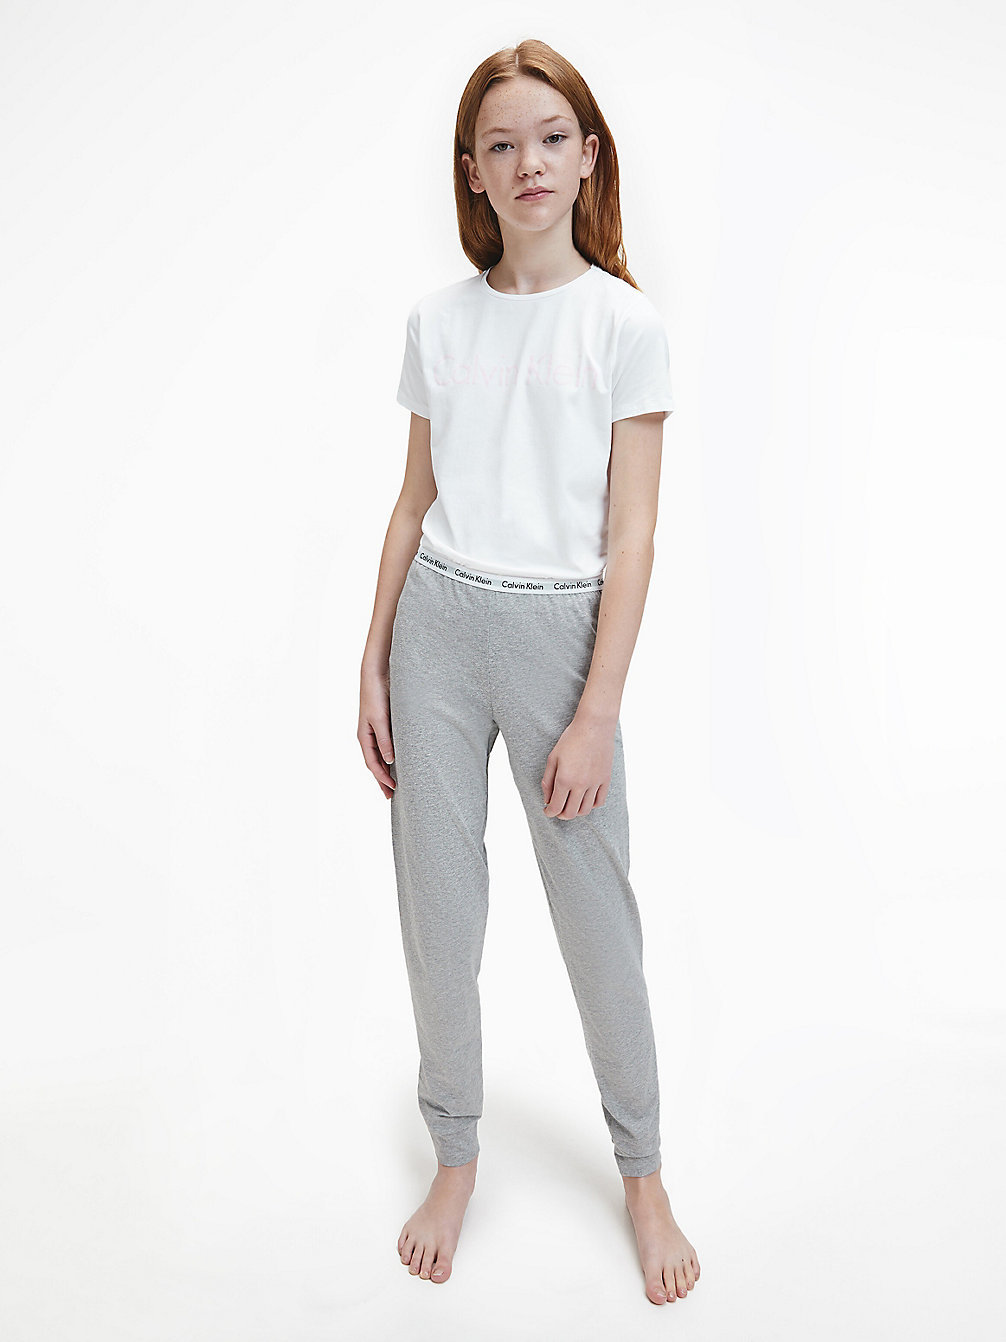 WHITE/GREY HTR > Meisjespyjama - Modern Cotton > undefined girls - Calvin Klein